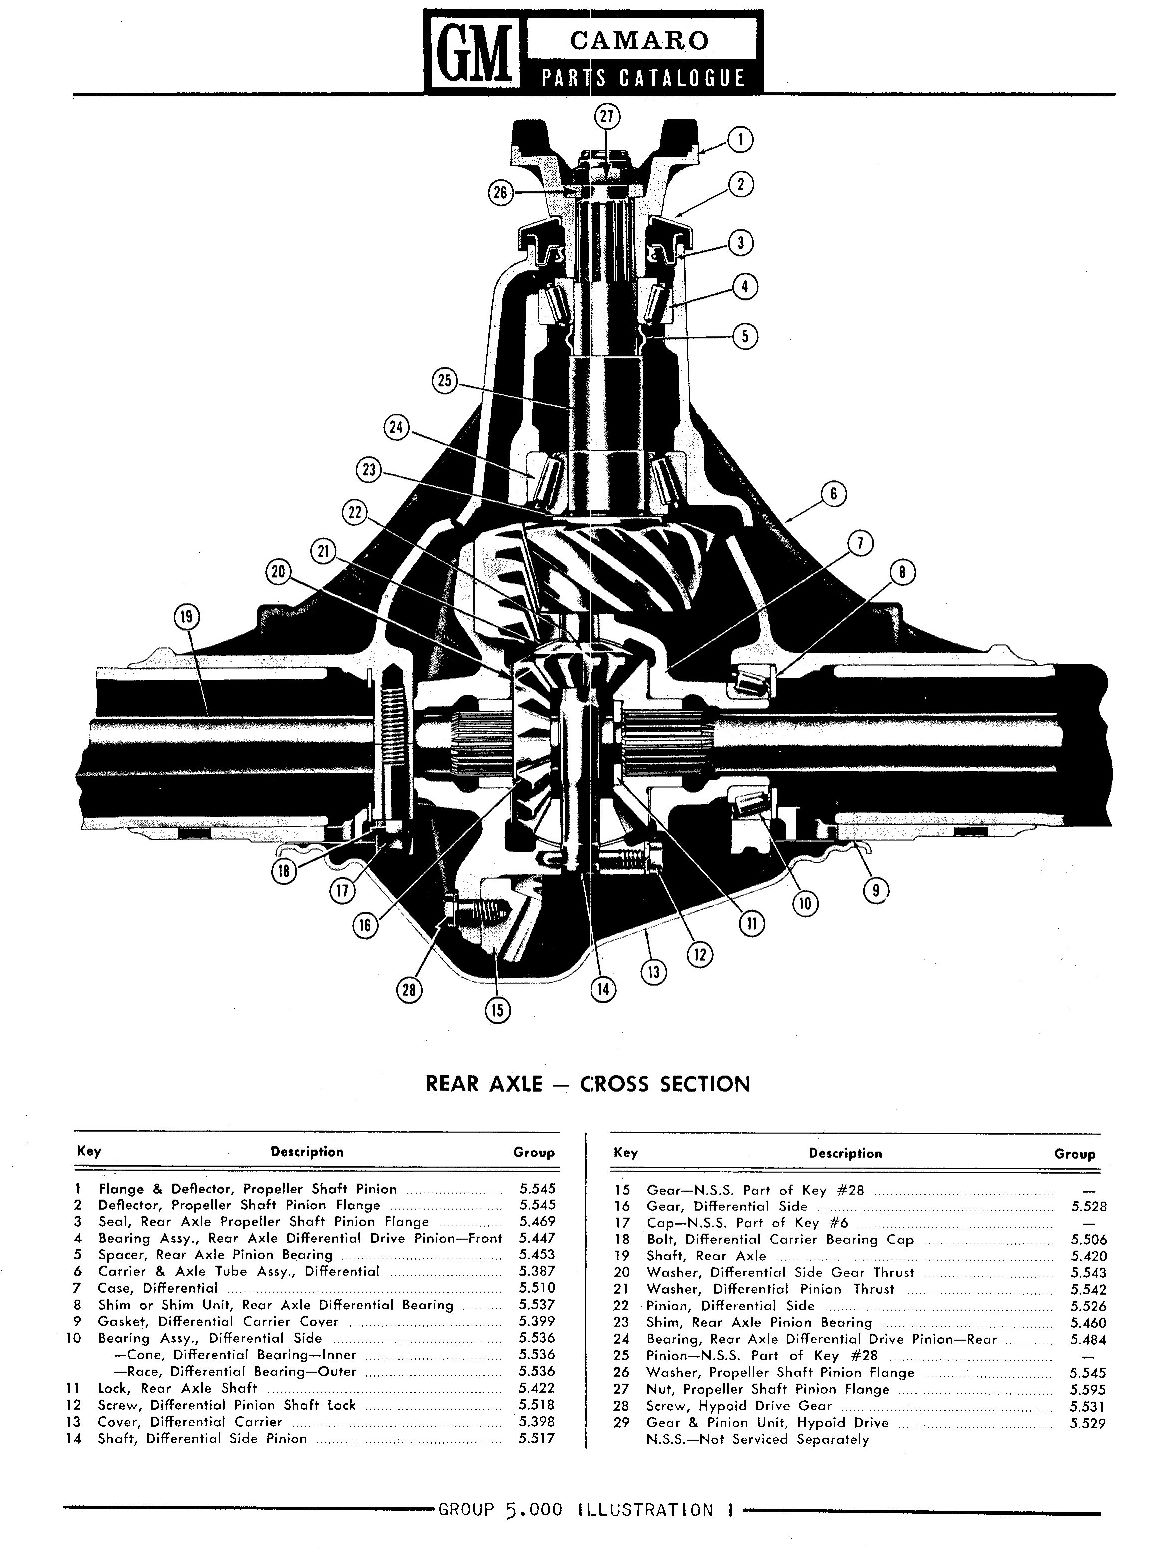 Rear axle cross section diagram